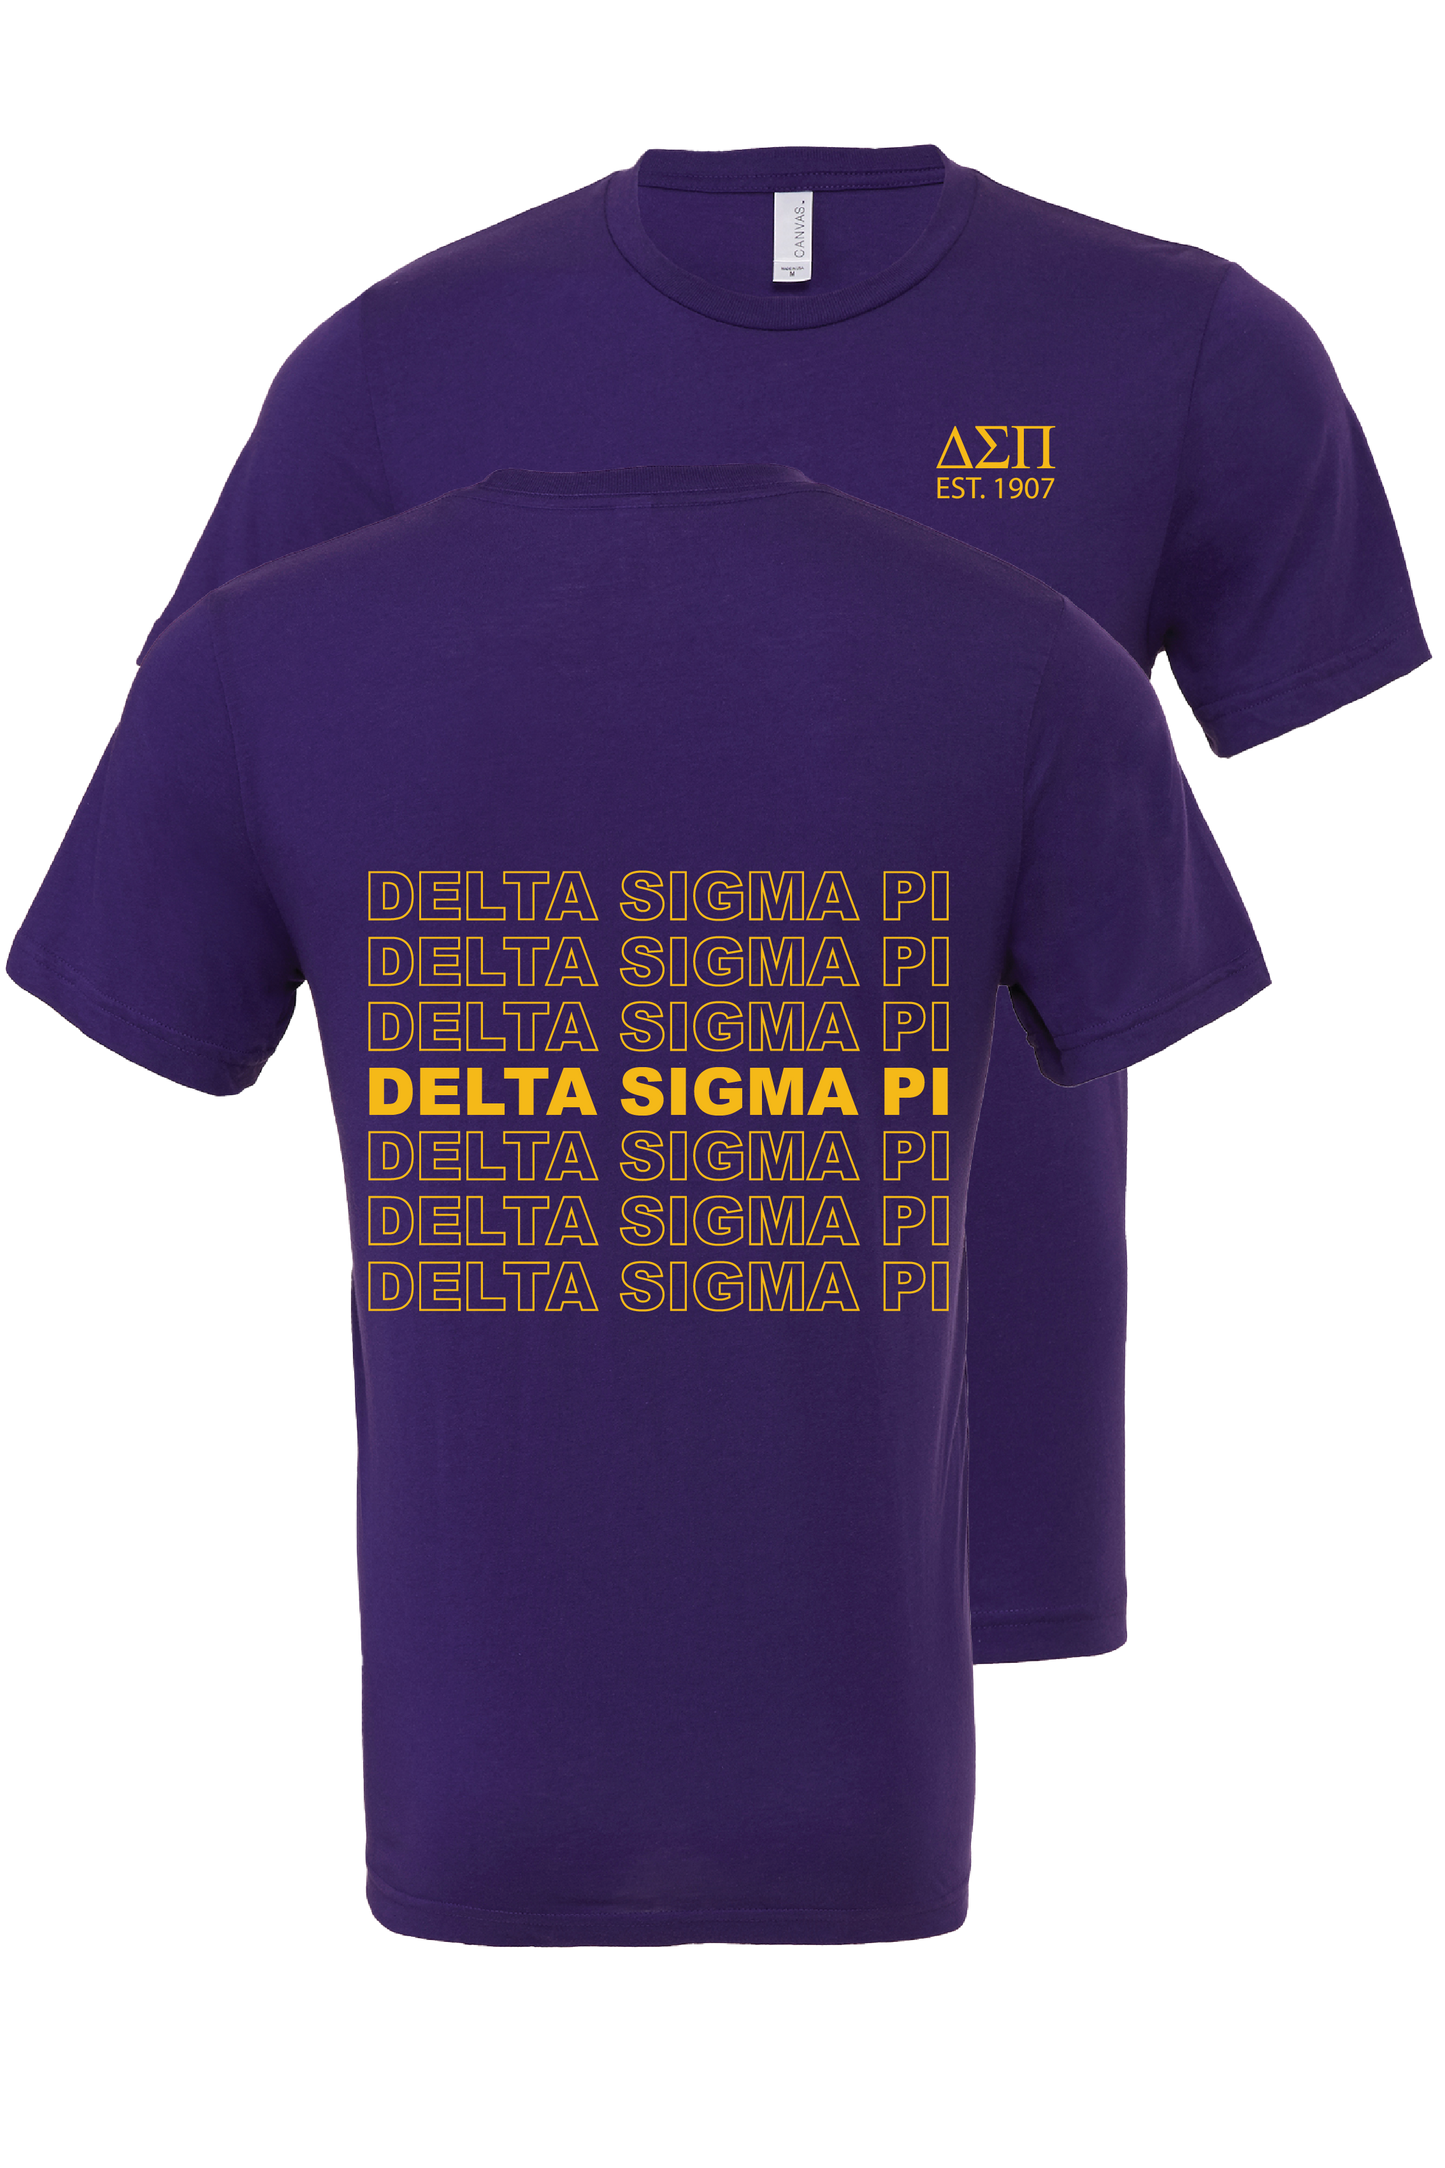 Delta Sigma Pi Repeating Name Short Sleeve T-Shirts